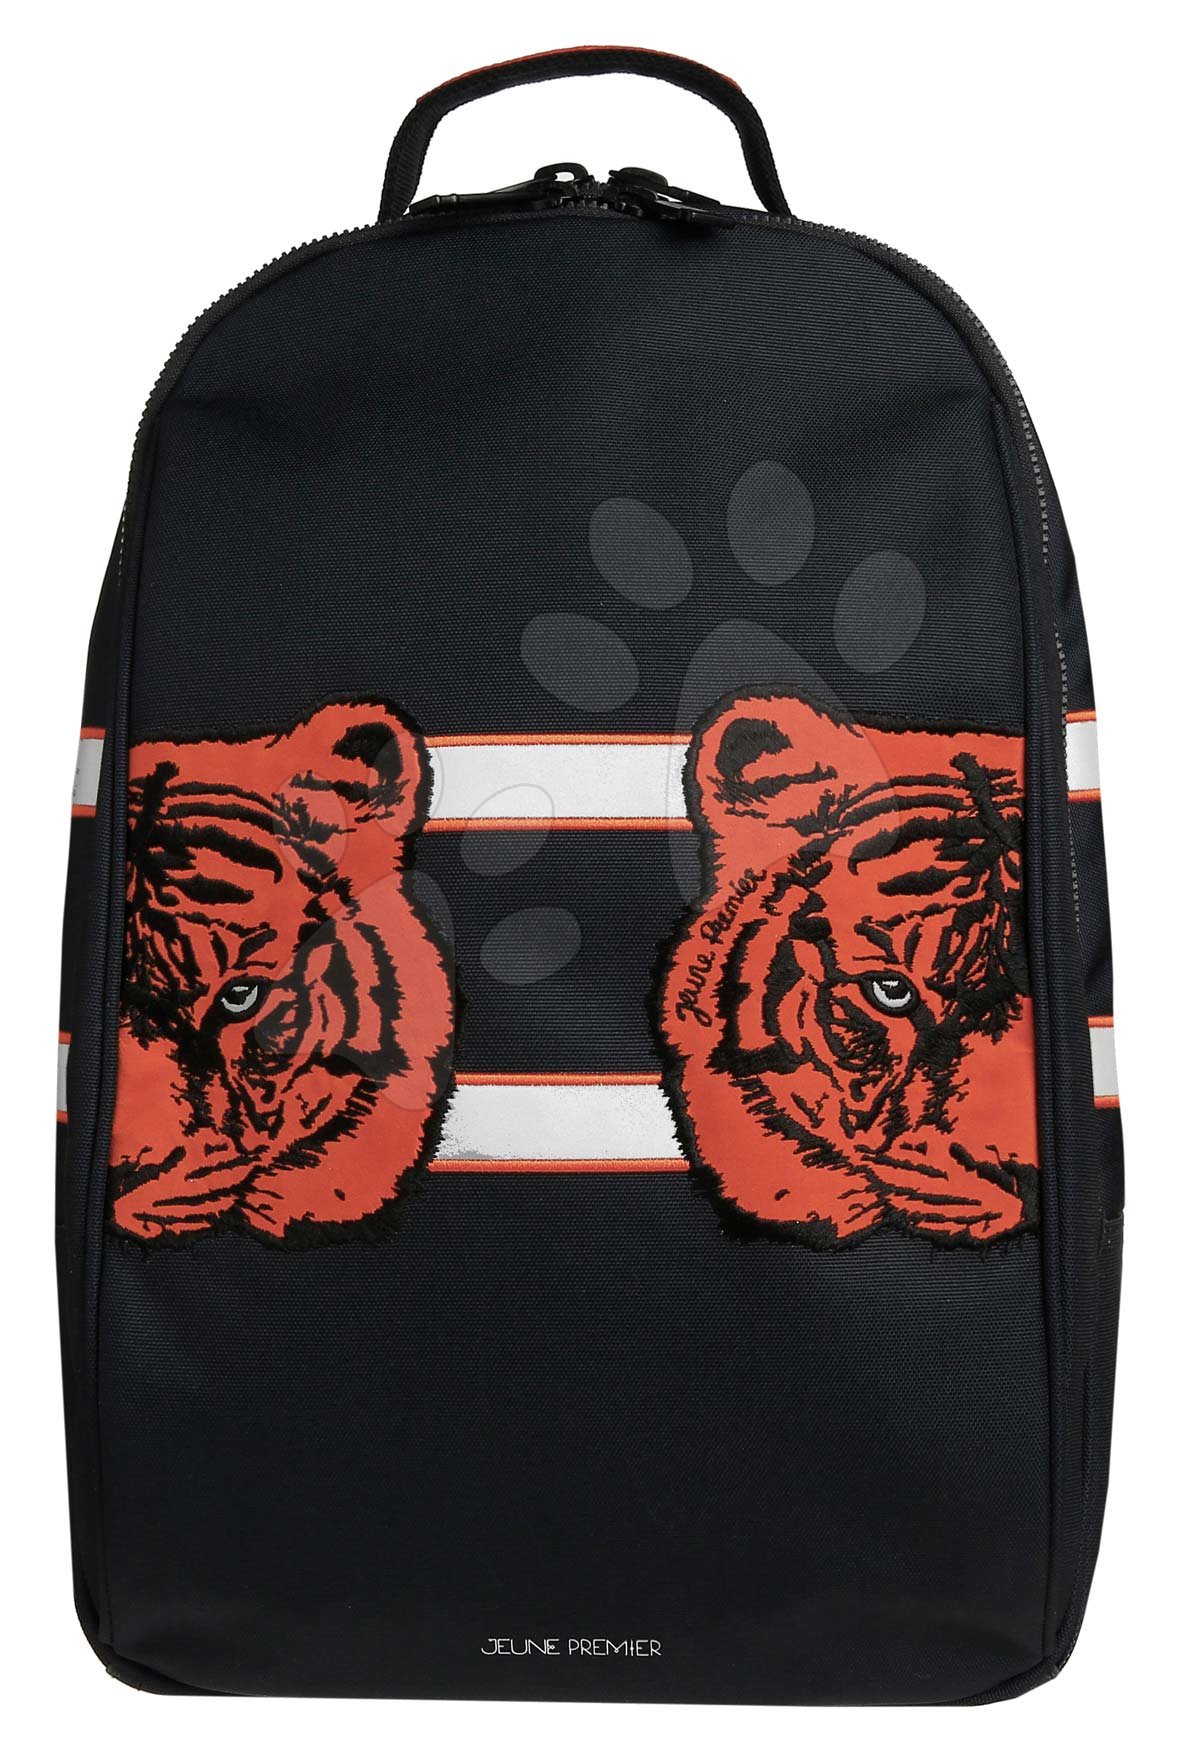 Školské tašky a batohy - Školská taška batoh Backpack James Tiger Twins Jeune Premier ergonomický luxusné prevedenie 42*30 cm